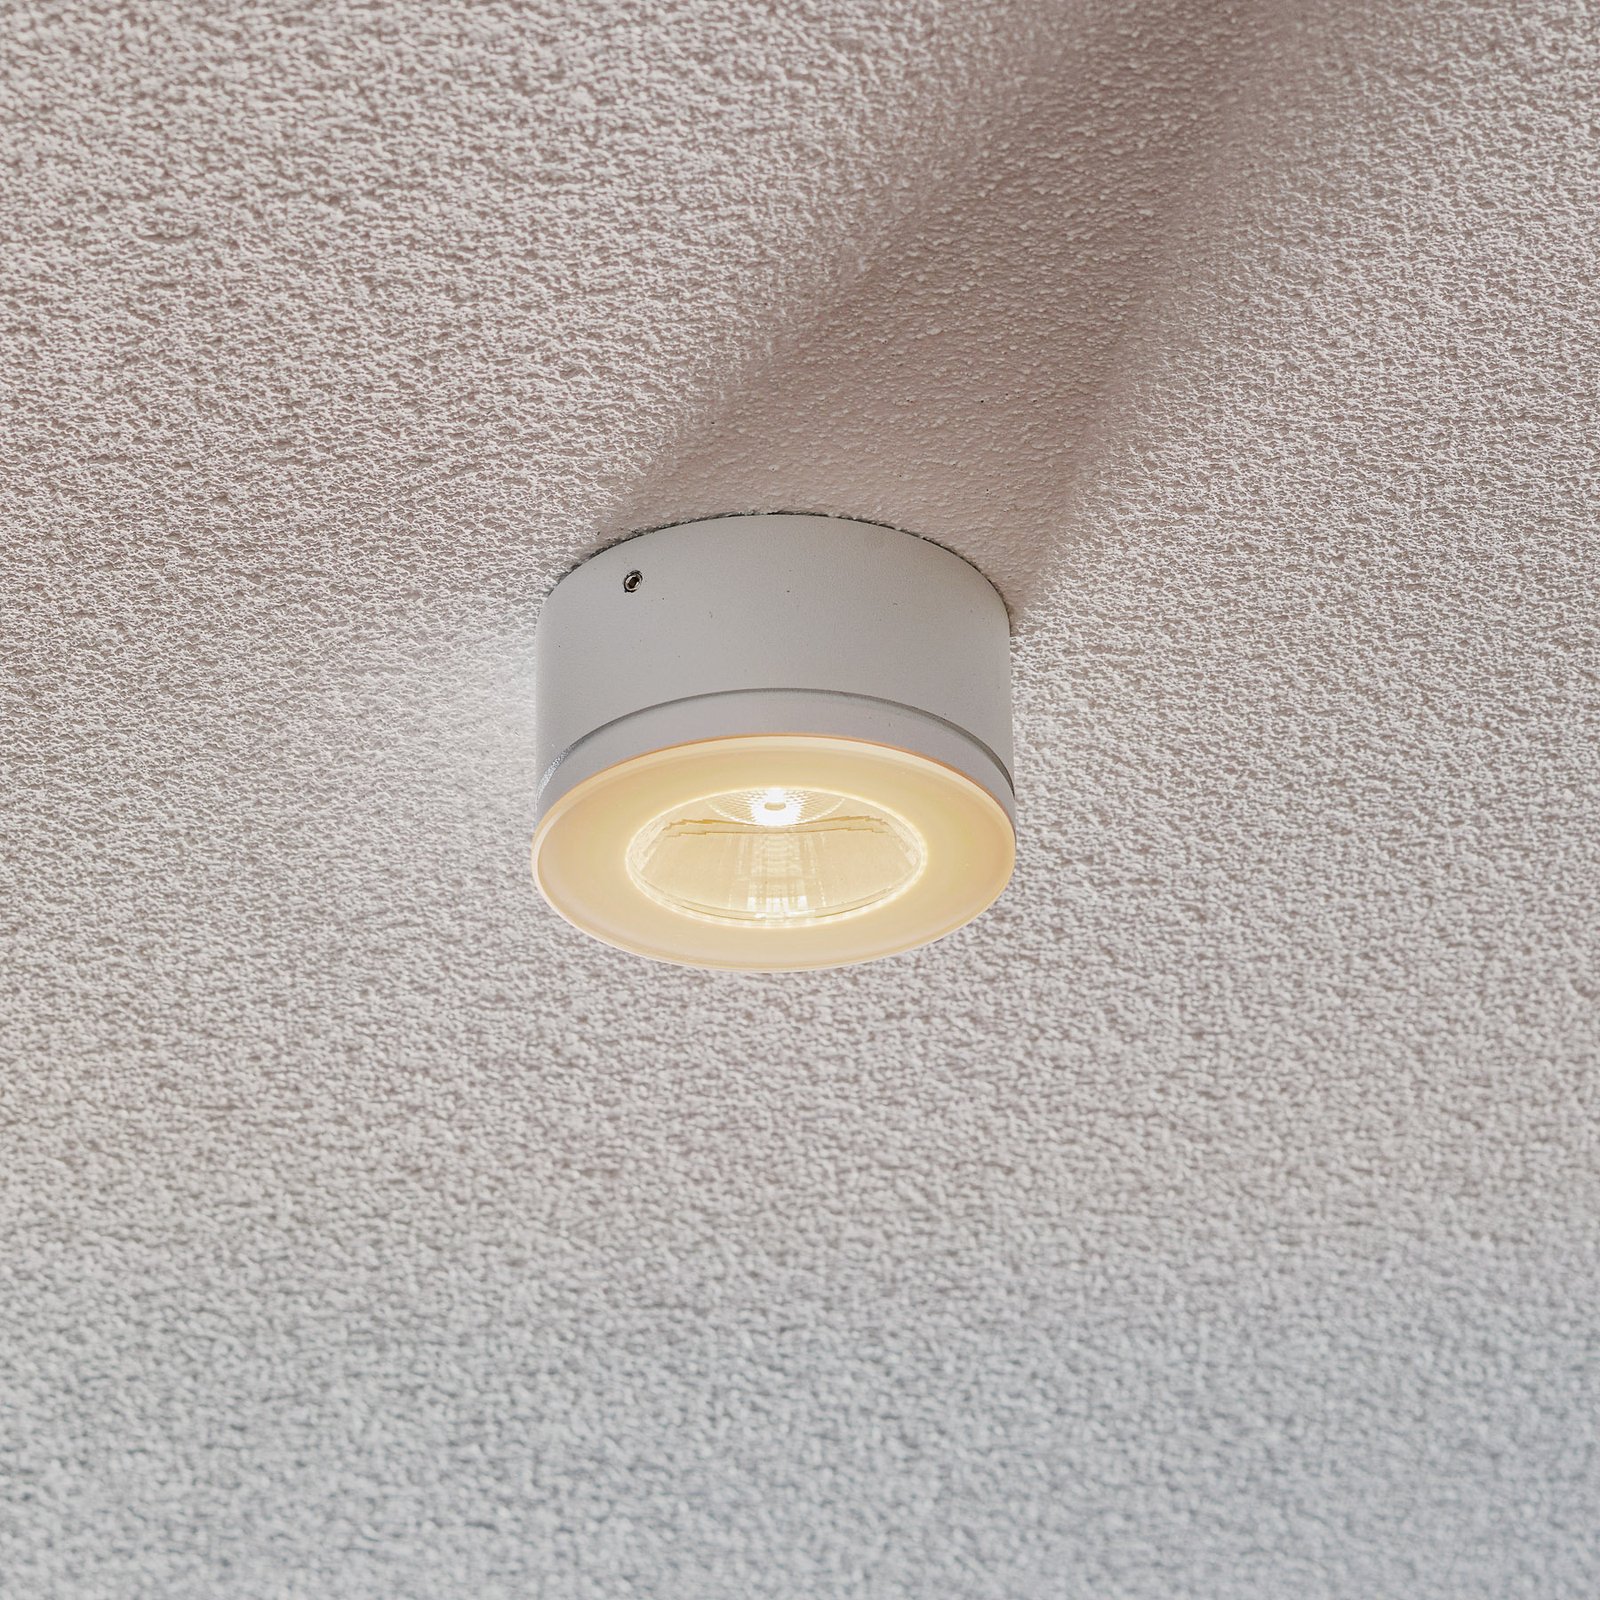 Inom- och utomhusbruk - LED-takspotlight Newton 35